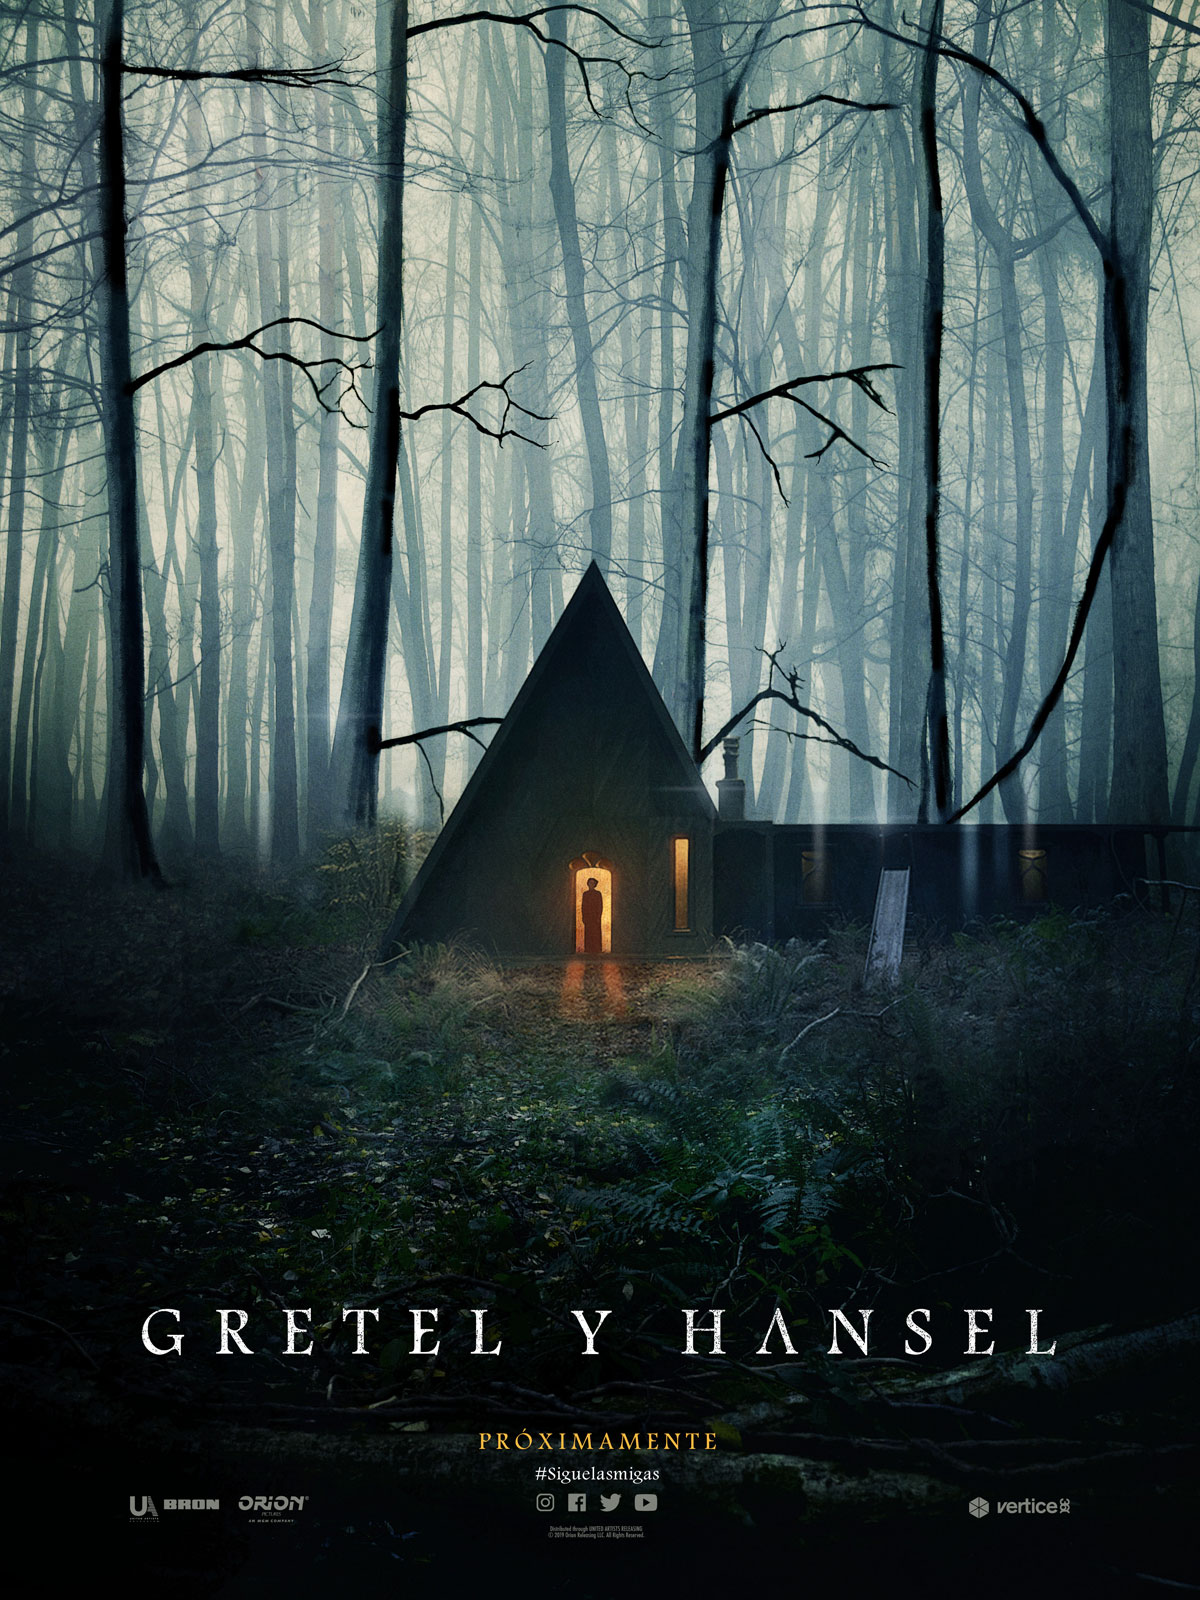 Gretel y Hansel : Un Siniestro Cuento de Hadas